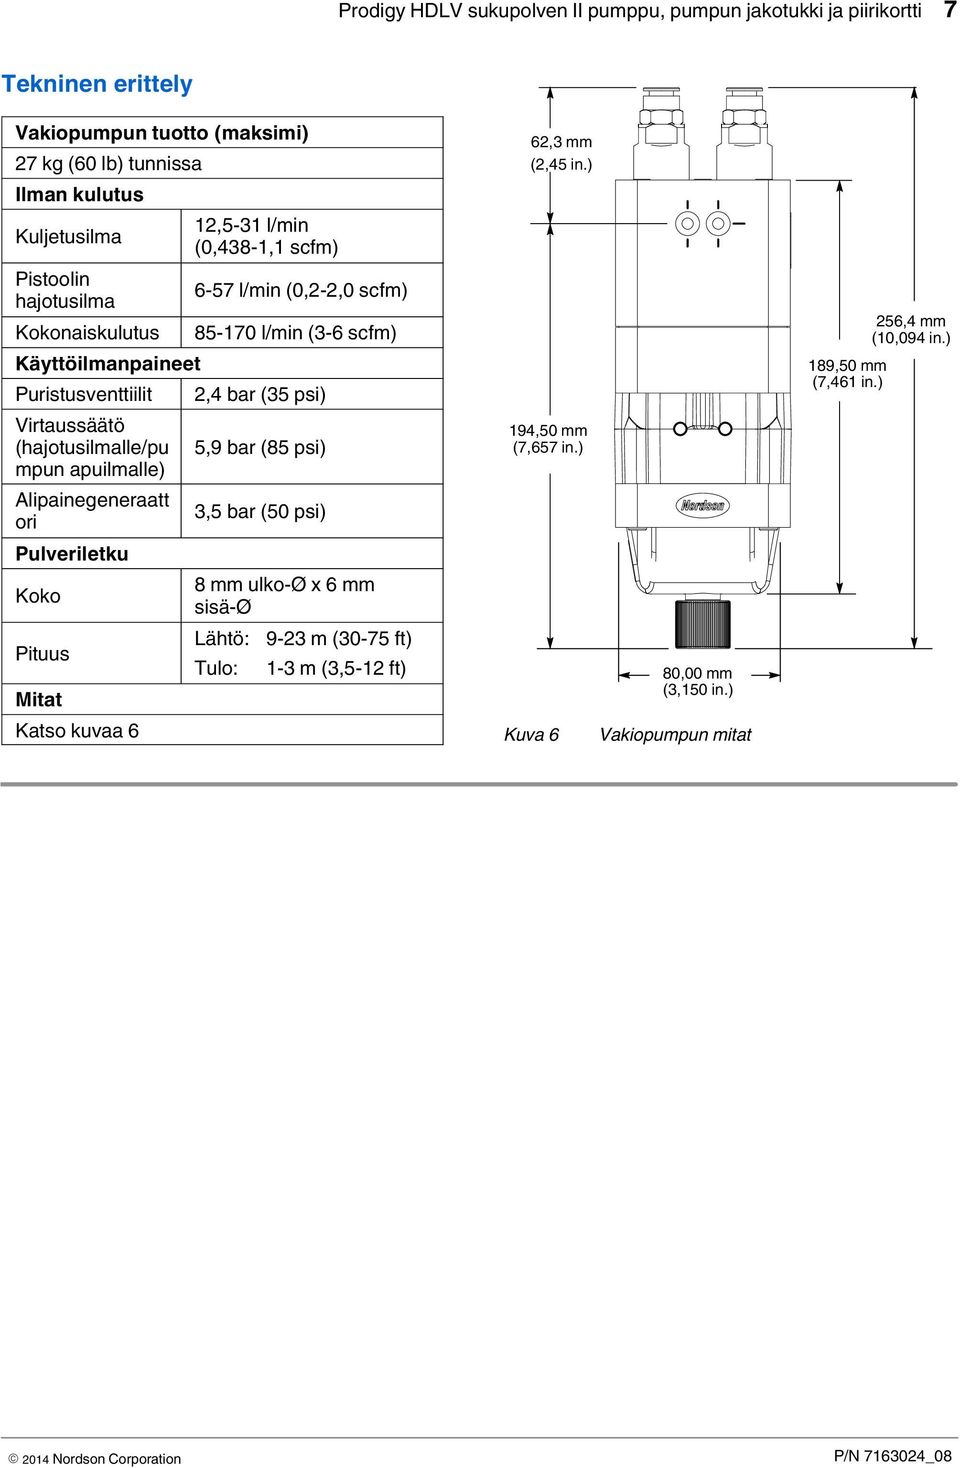 Virtaussäätö (hajotusilmalle/pu 5,9 bar (85 psi) mpun apuilmalle) Alipainegeneraatt 3,5 bar (50 psi) ori Pulveriletku 8 mm ulko-ø x 6 mm Koko sisä-ø Lähtö: 9-23 m (30-75